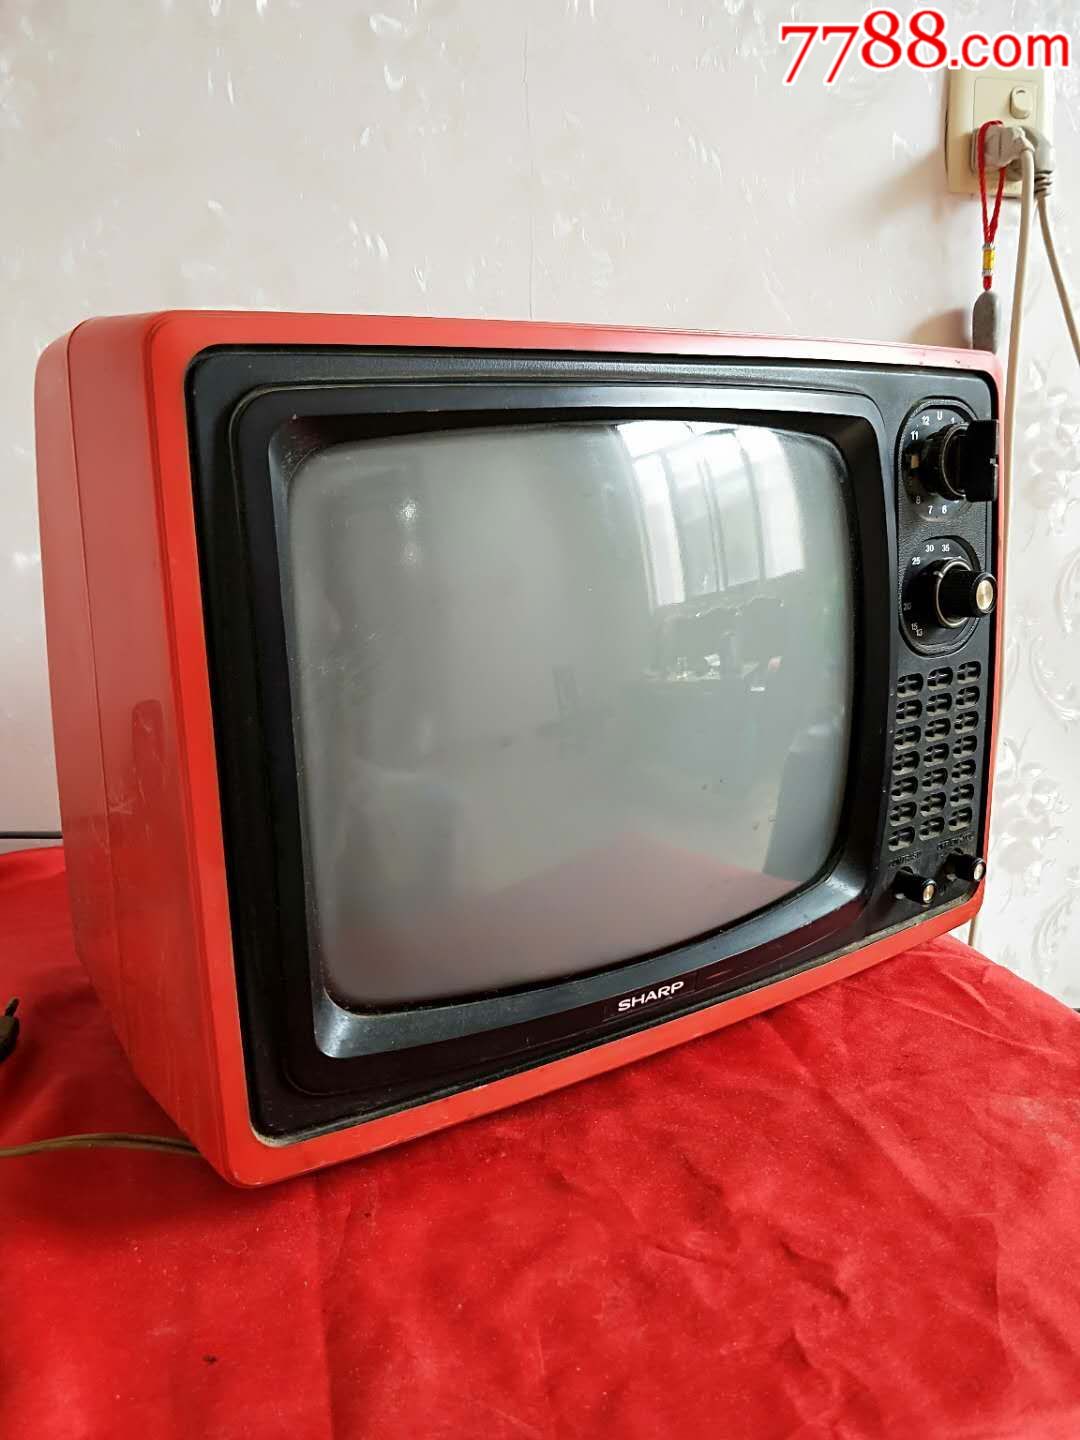 日本索尼12寸黑白电视机,时代特征明显,正常使用